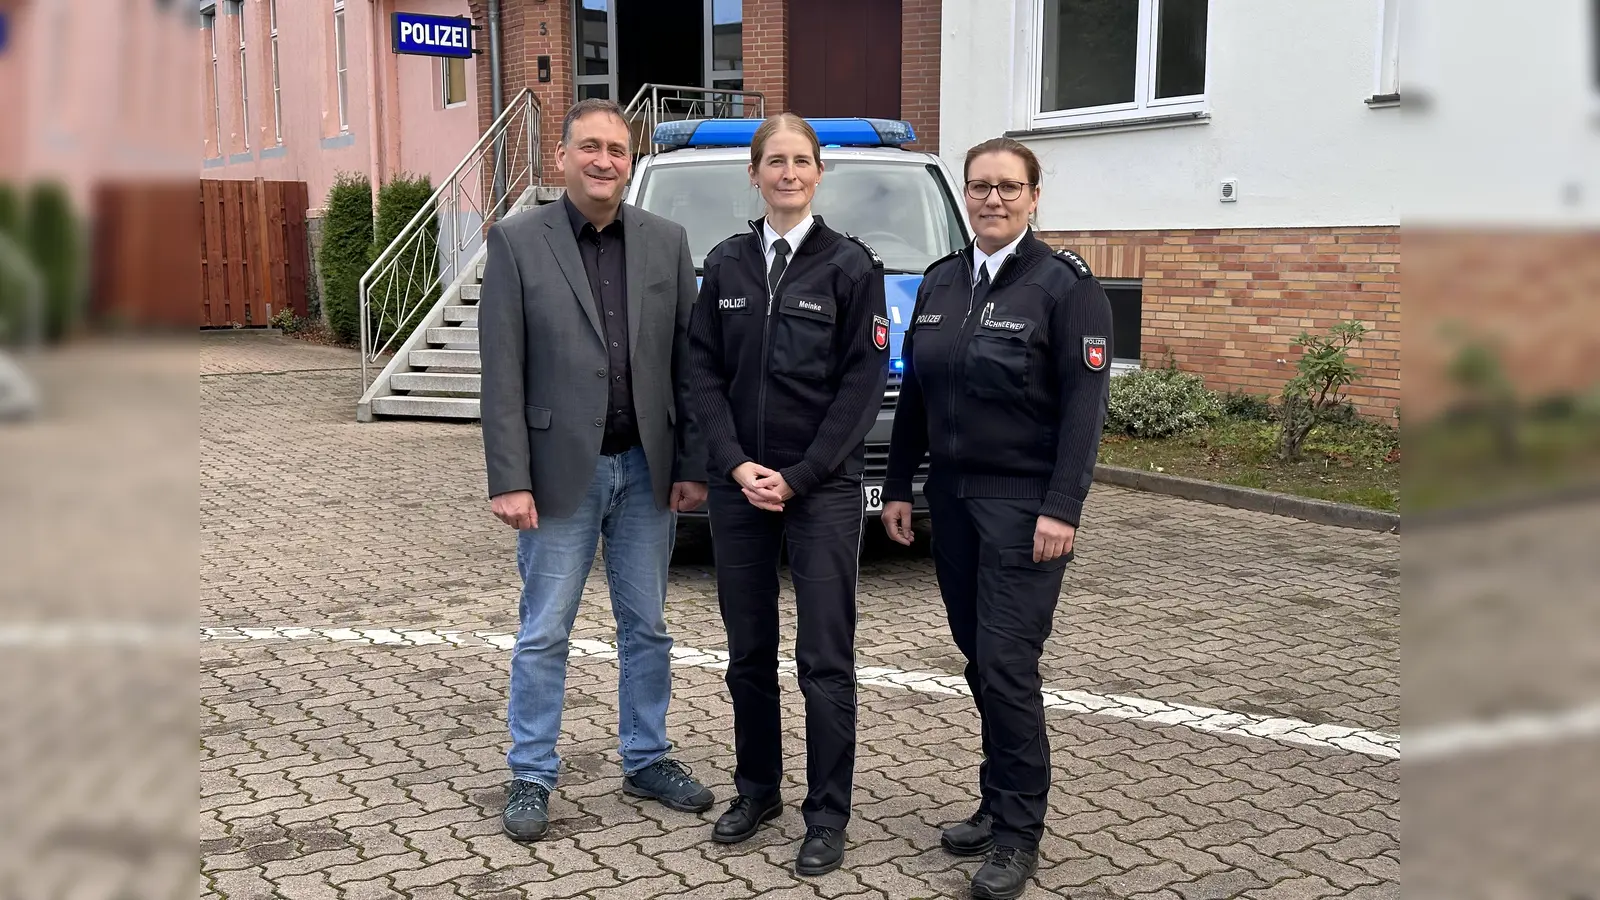 Melanie Meinke (Mitte) ist die neue Leiterin des Polizeikommissariat Rinteln und wird unterstützt von ihrer Stellvertreterin Silke Schneeweiß und dem Leiter des Kriminalermittlungsdienstes, Frank Schäfer.  (Foto: ste)